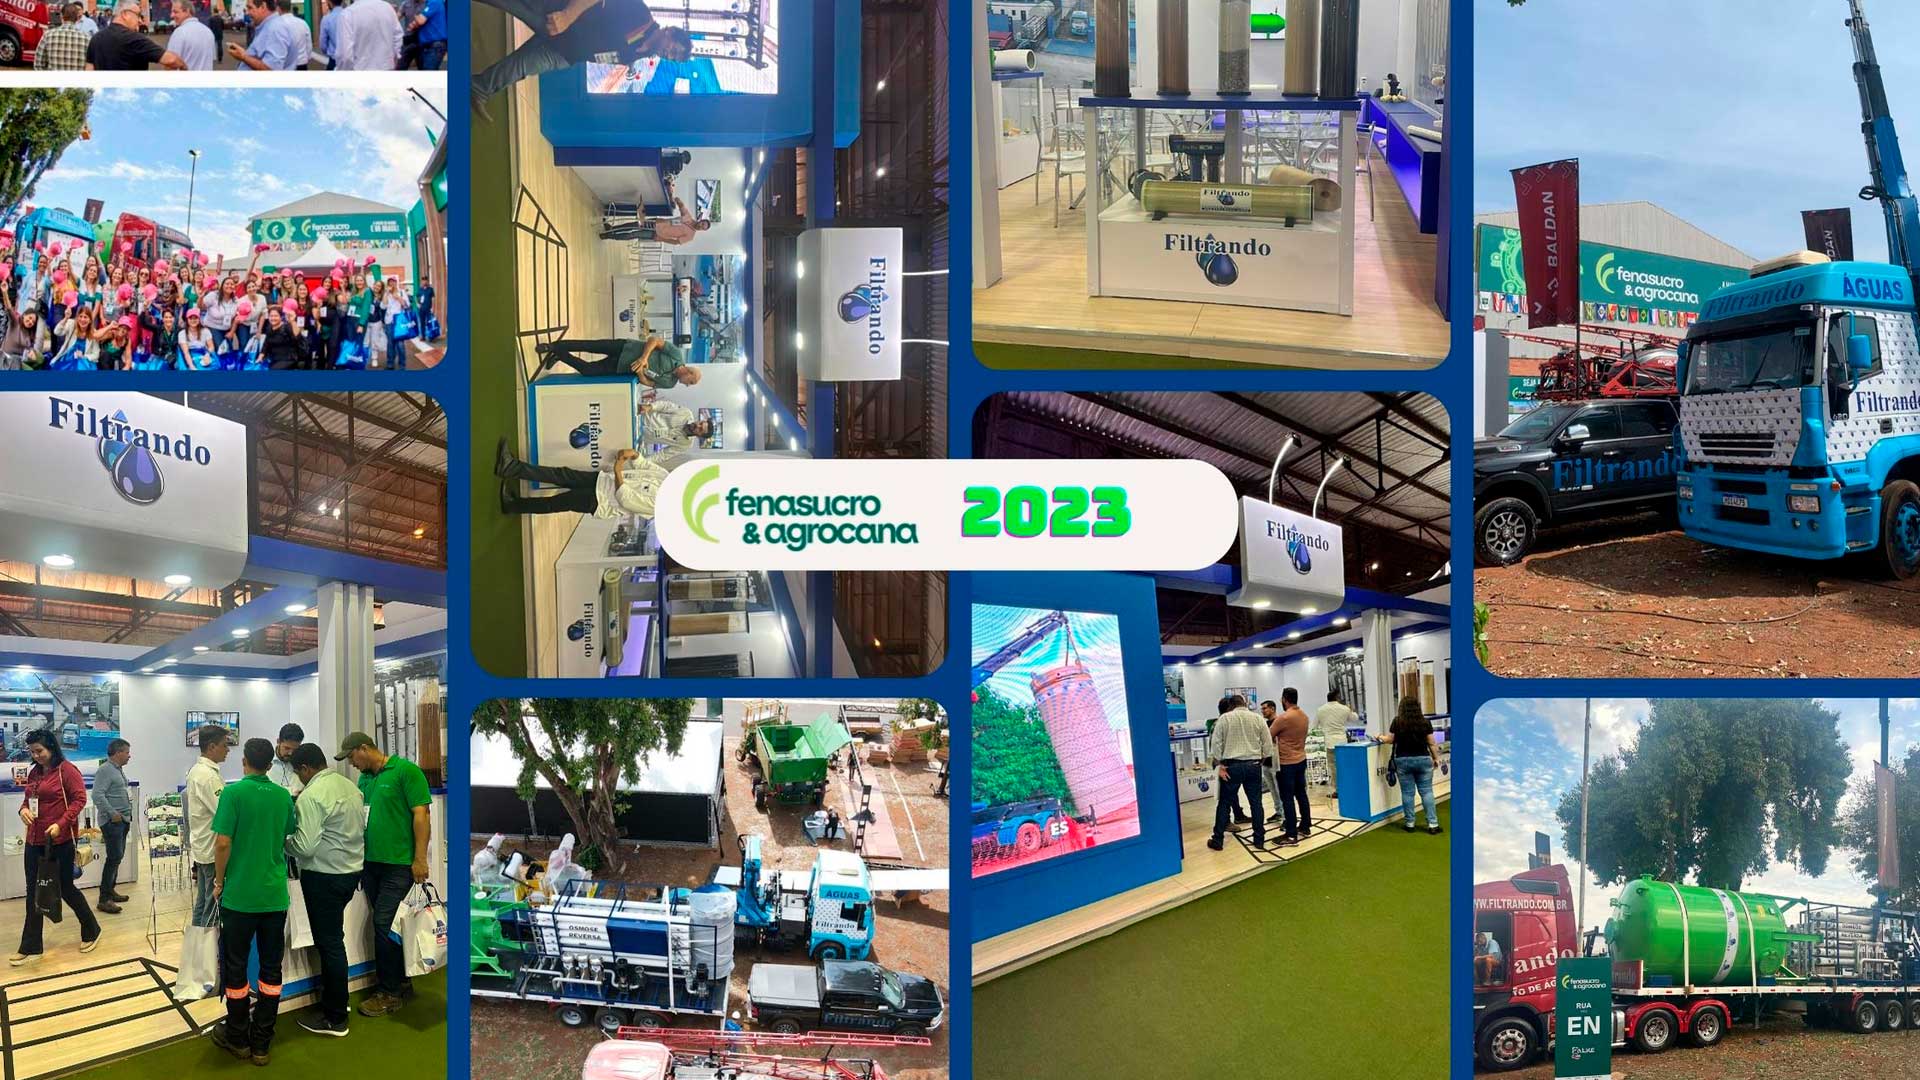 Filtrando - Fenasucro & Agrocana - 2023